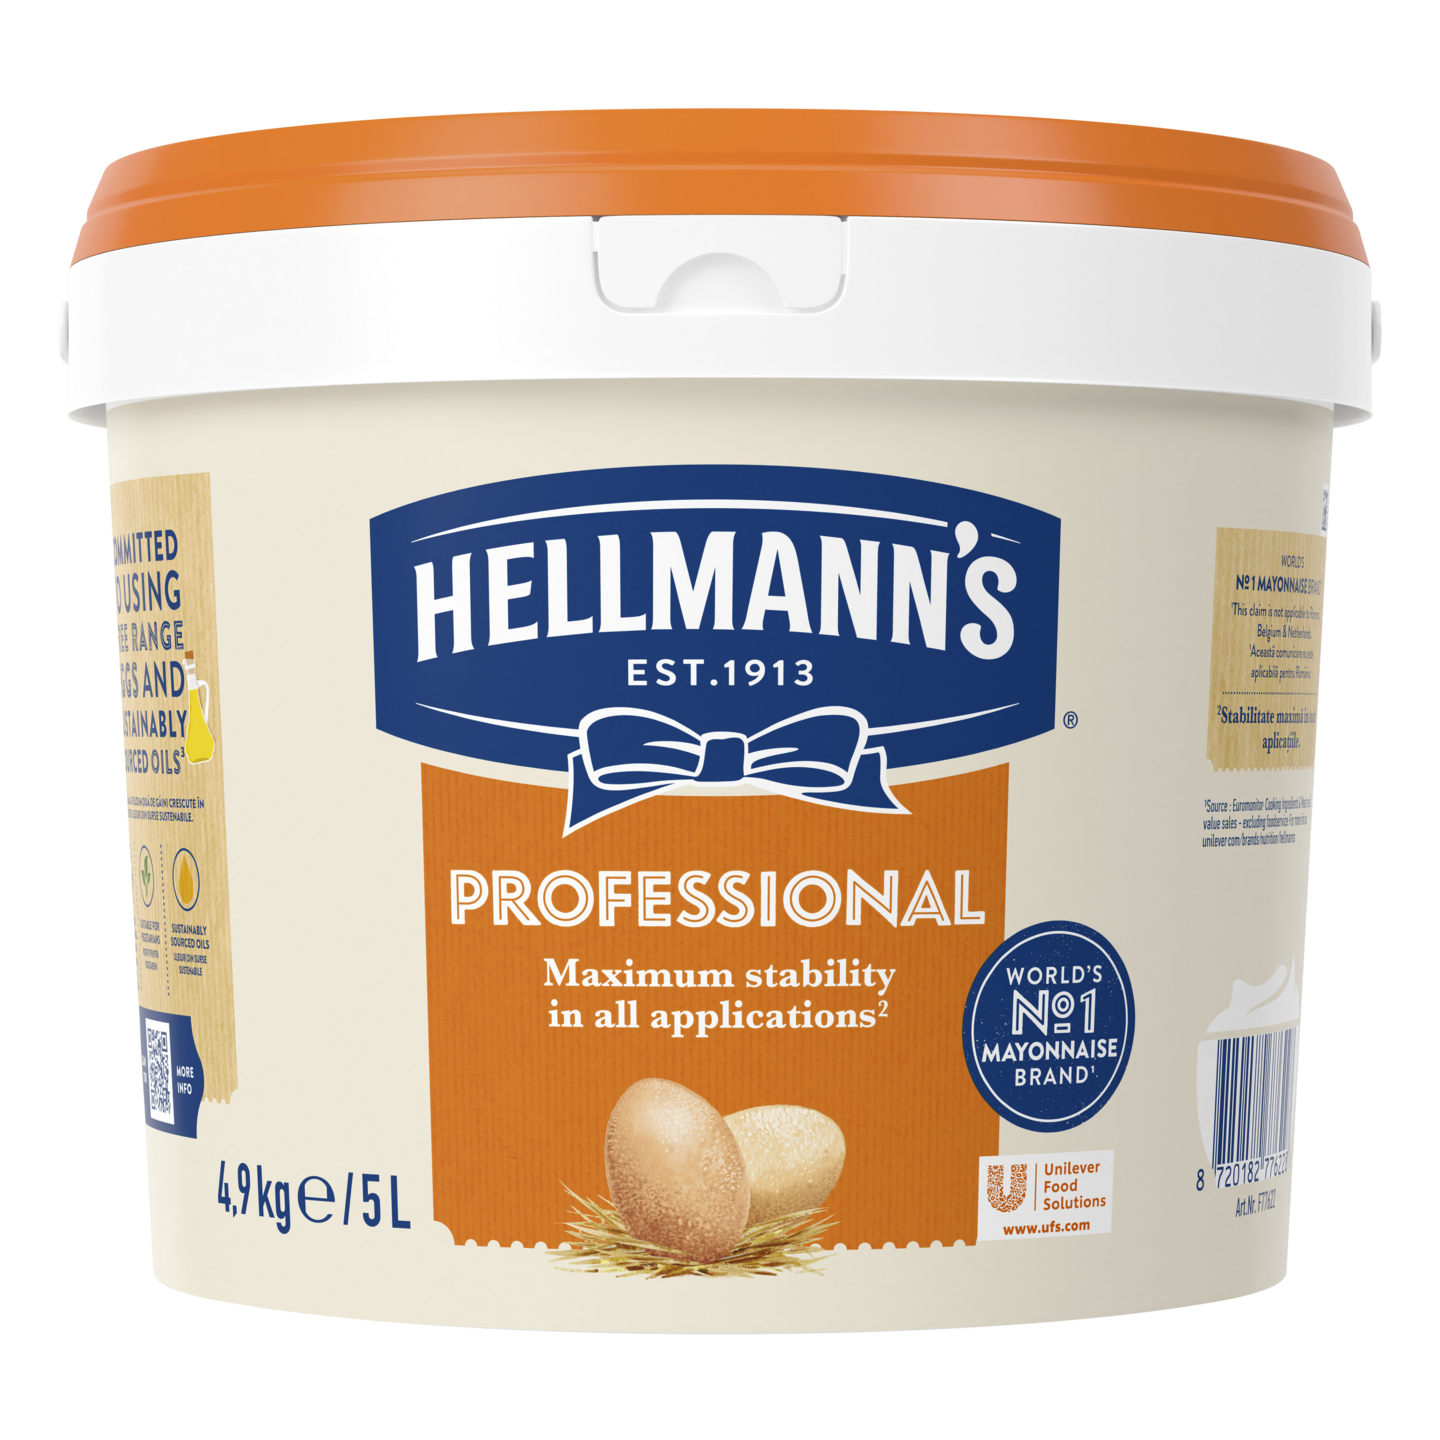 Hellmann's Professional majoneesi 5l